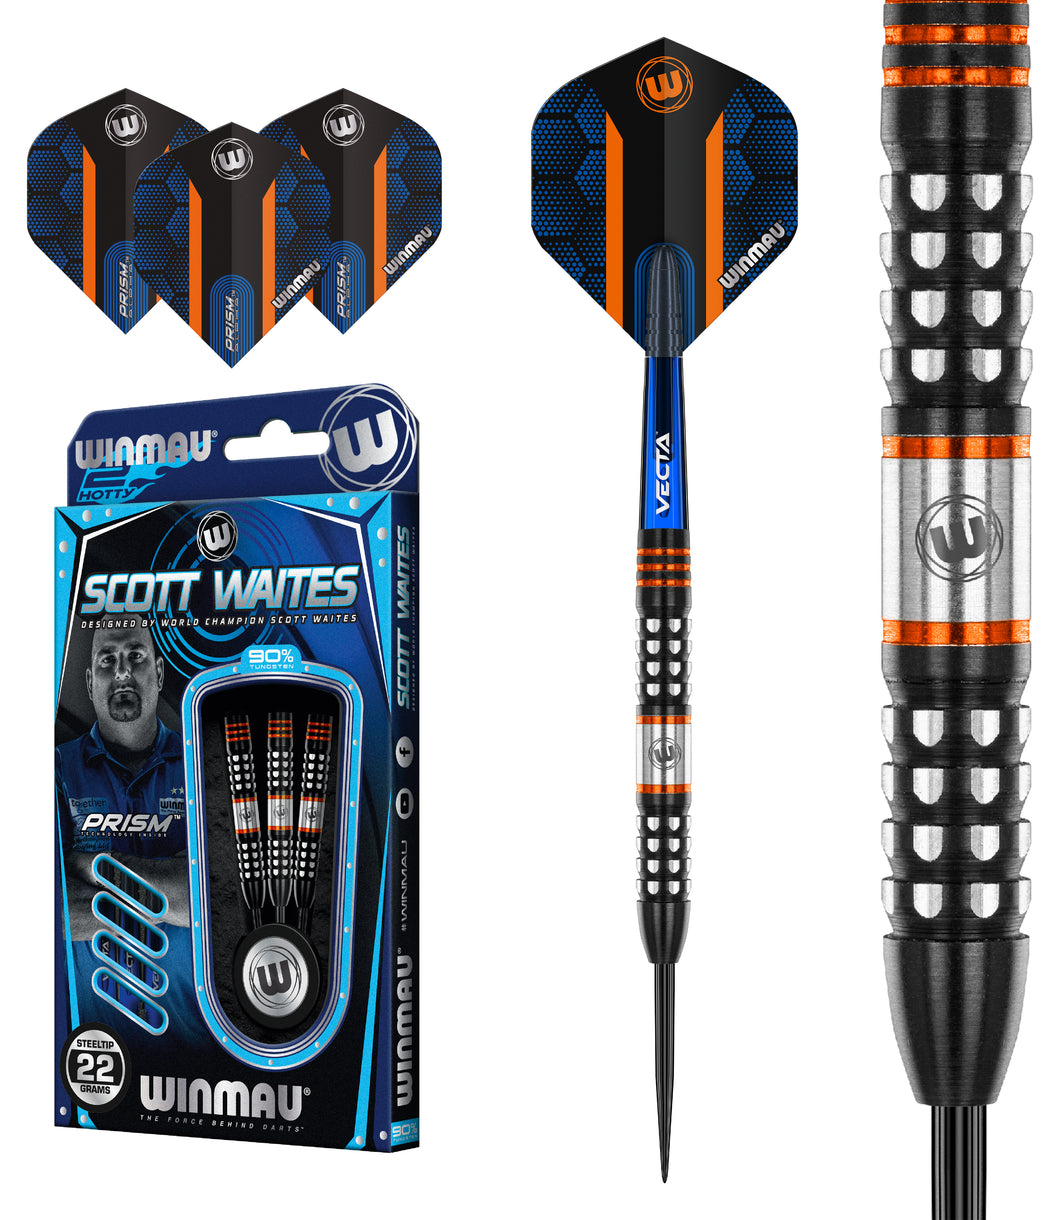 Winmau Scott Waites - Scotty To Hotty - 90% Tungsten Darts - 22g 24g